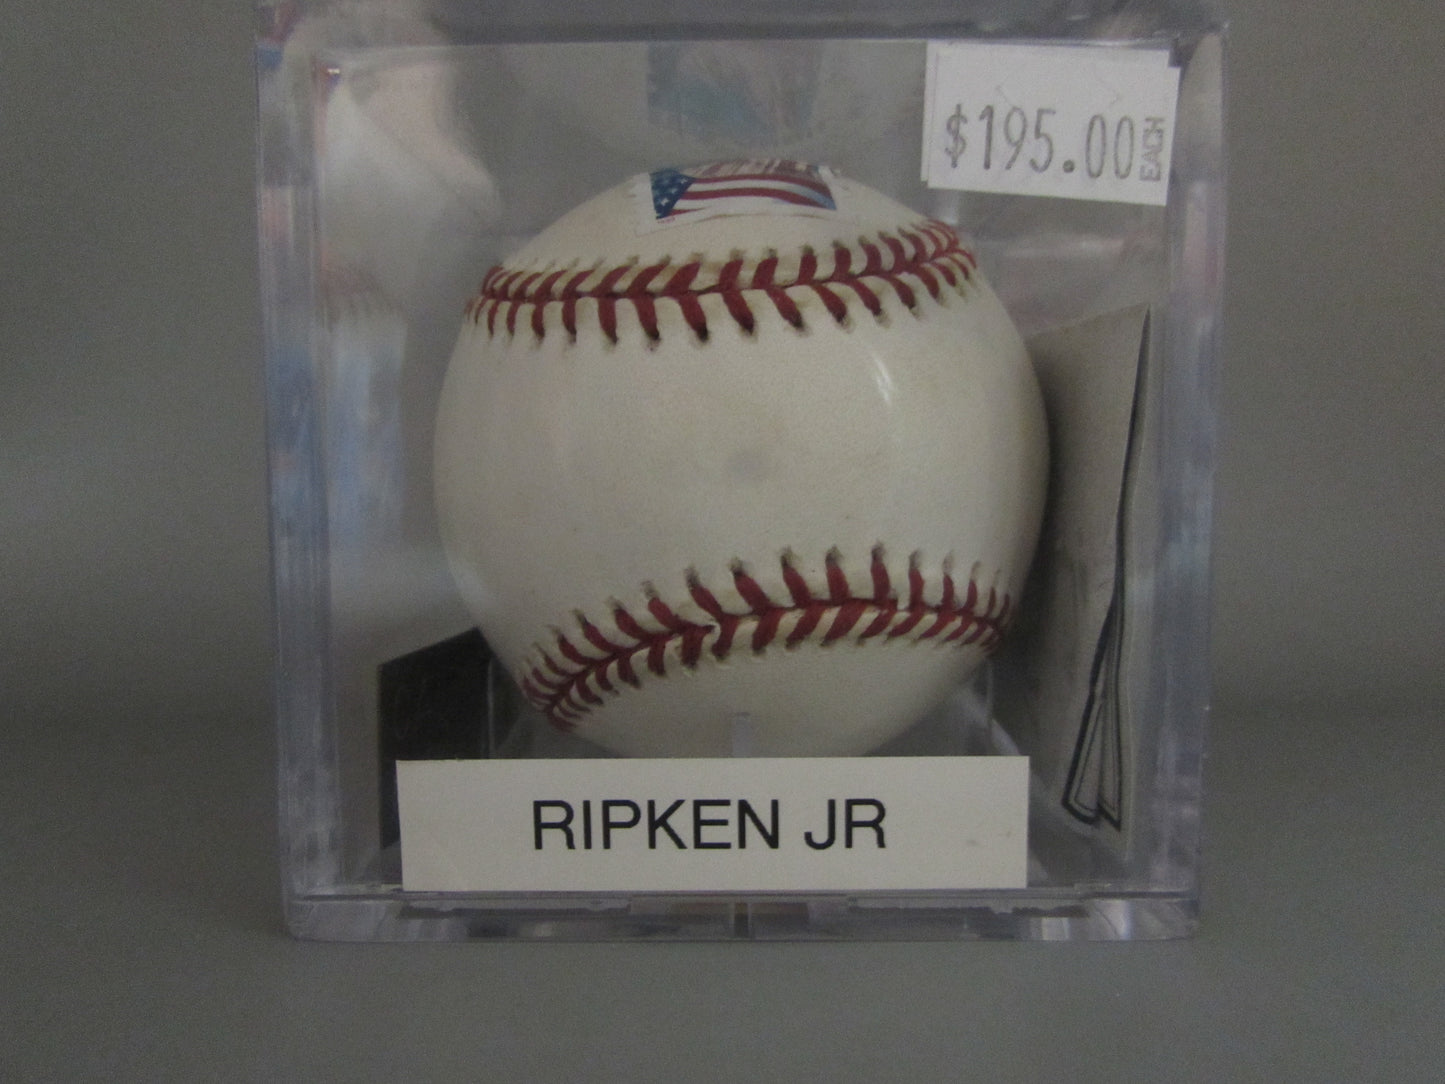 Cal Ripken jr signed baseball